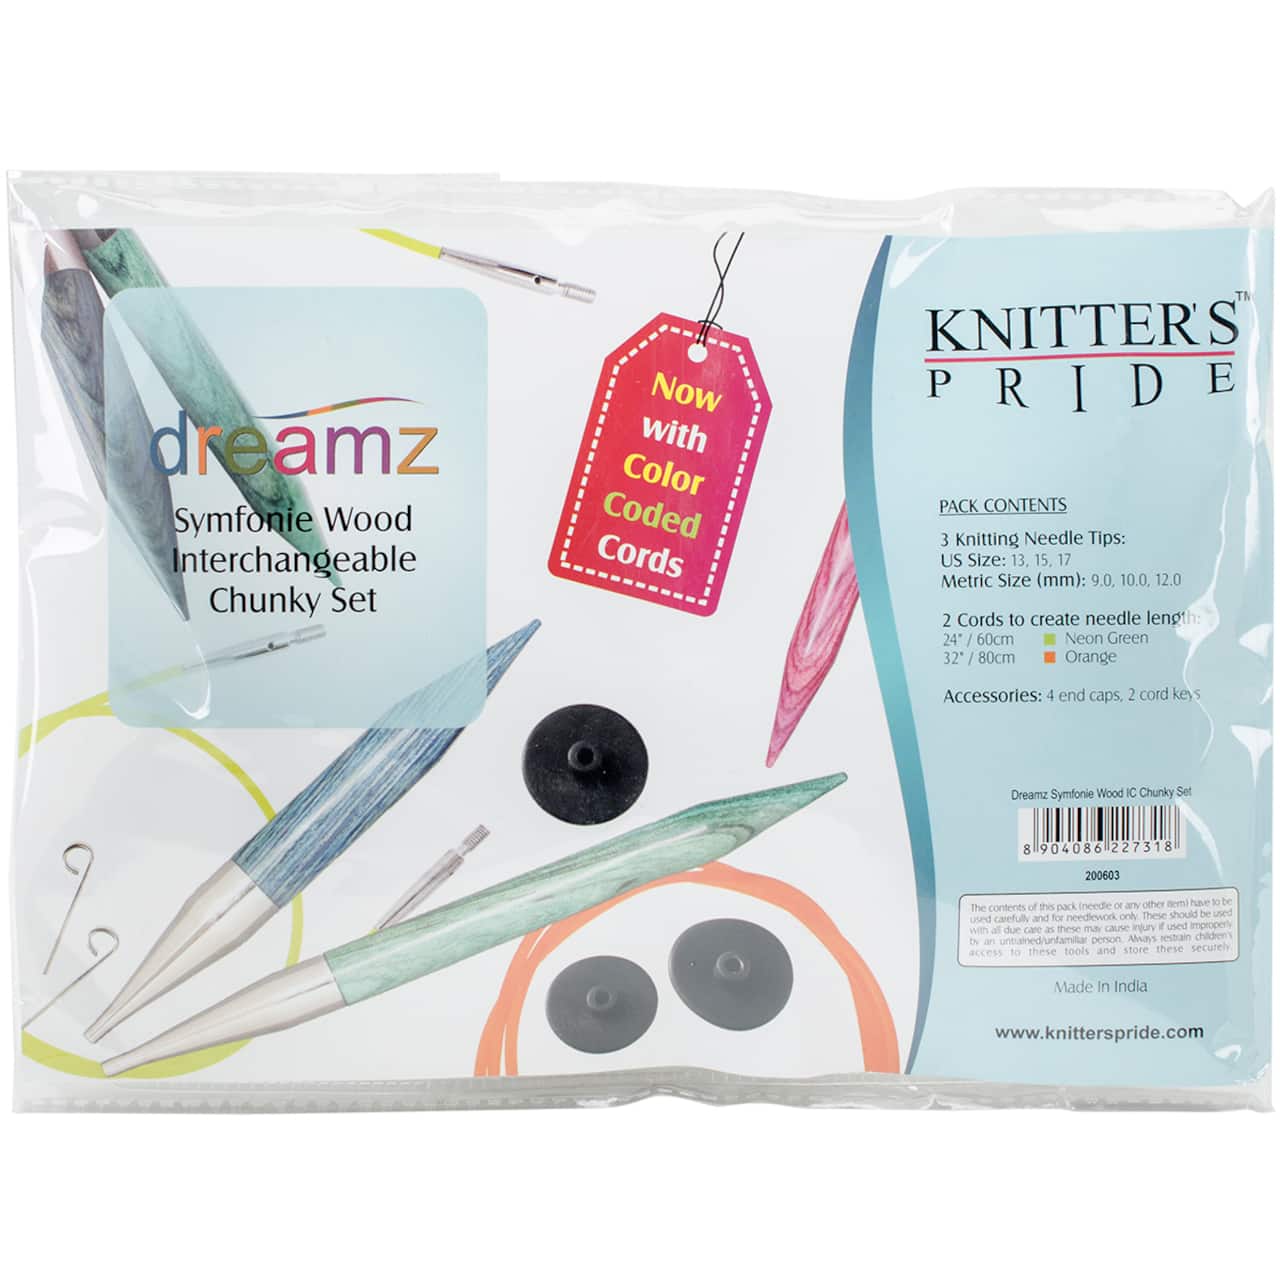 Knitter's Pride™ Dreamz Chunky Interchangeable Knitting Needles